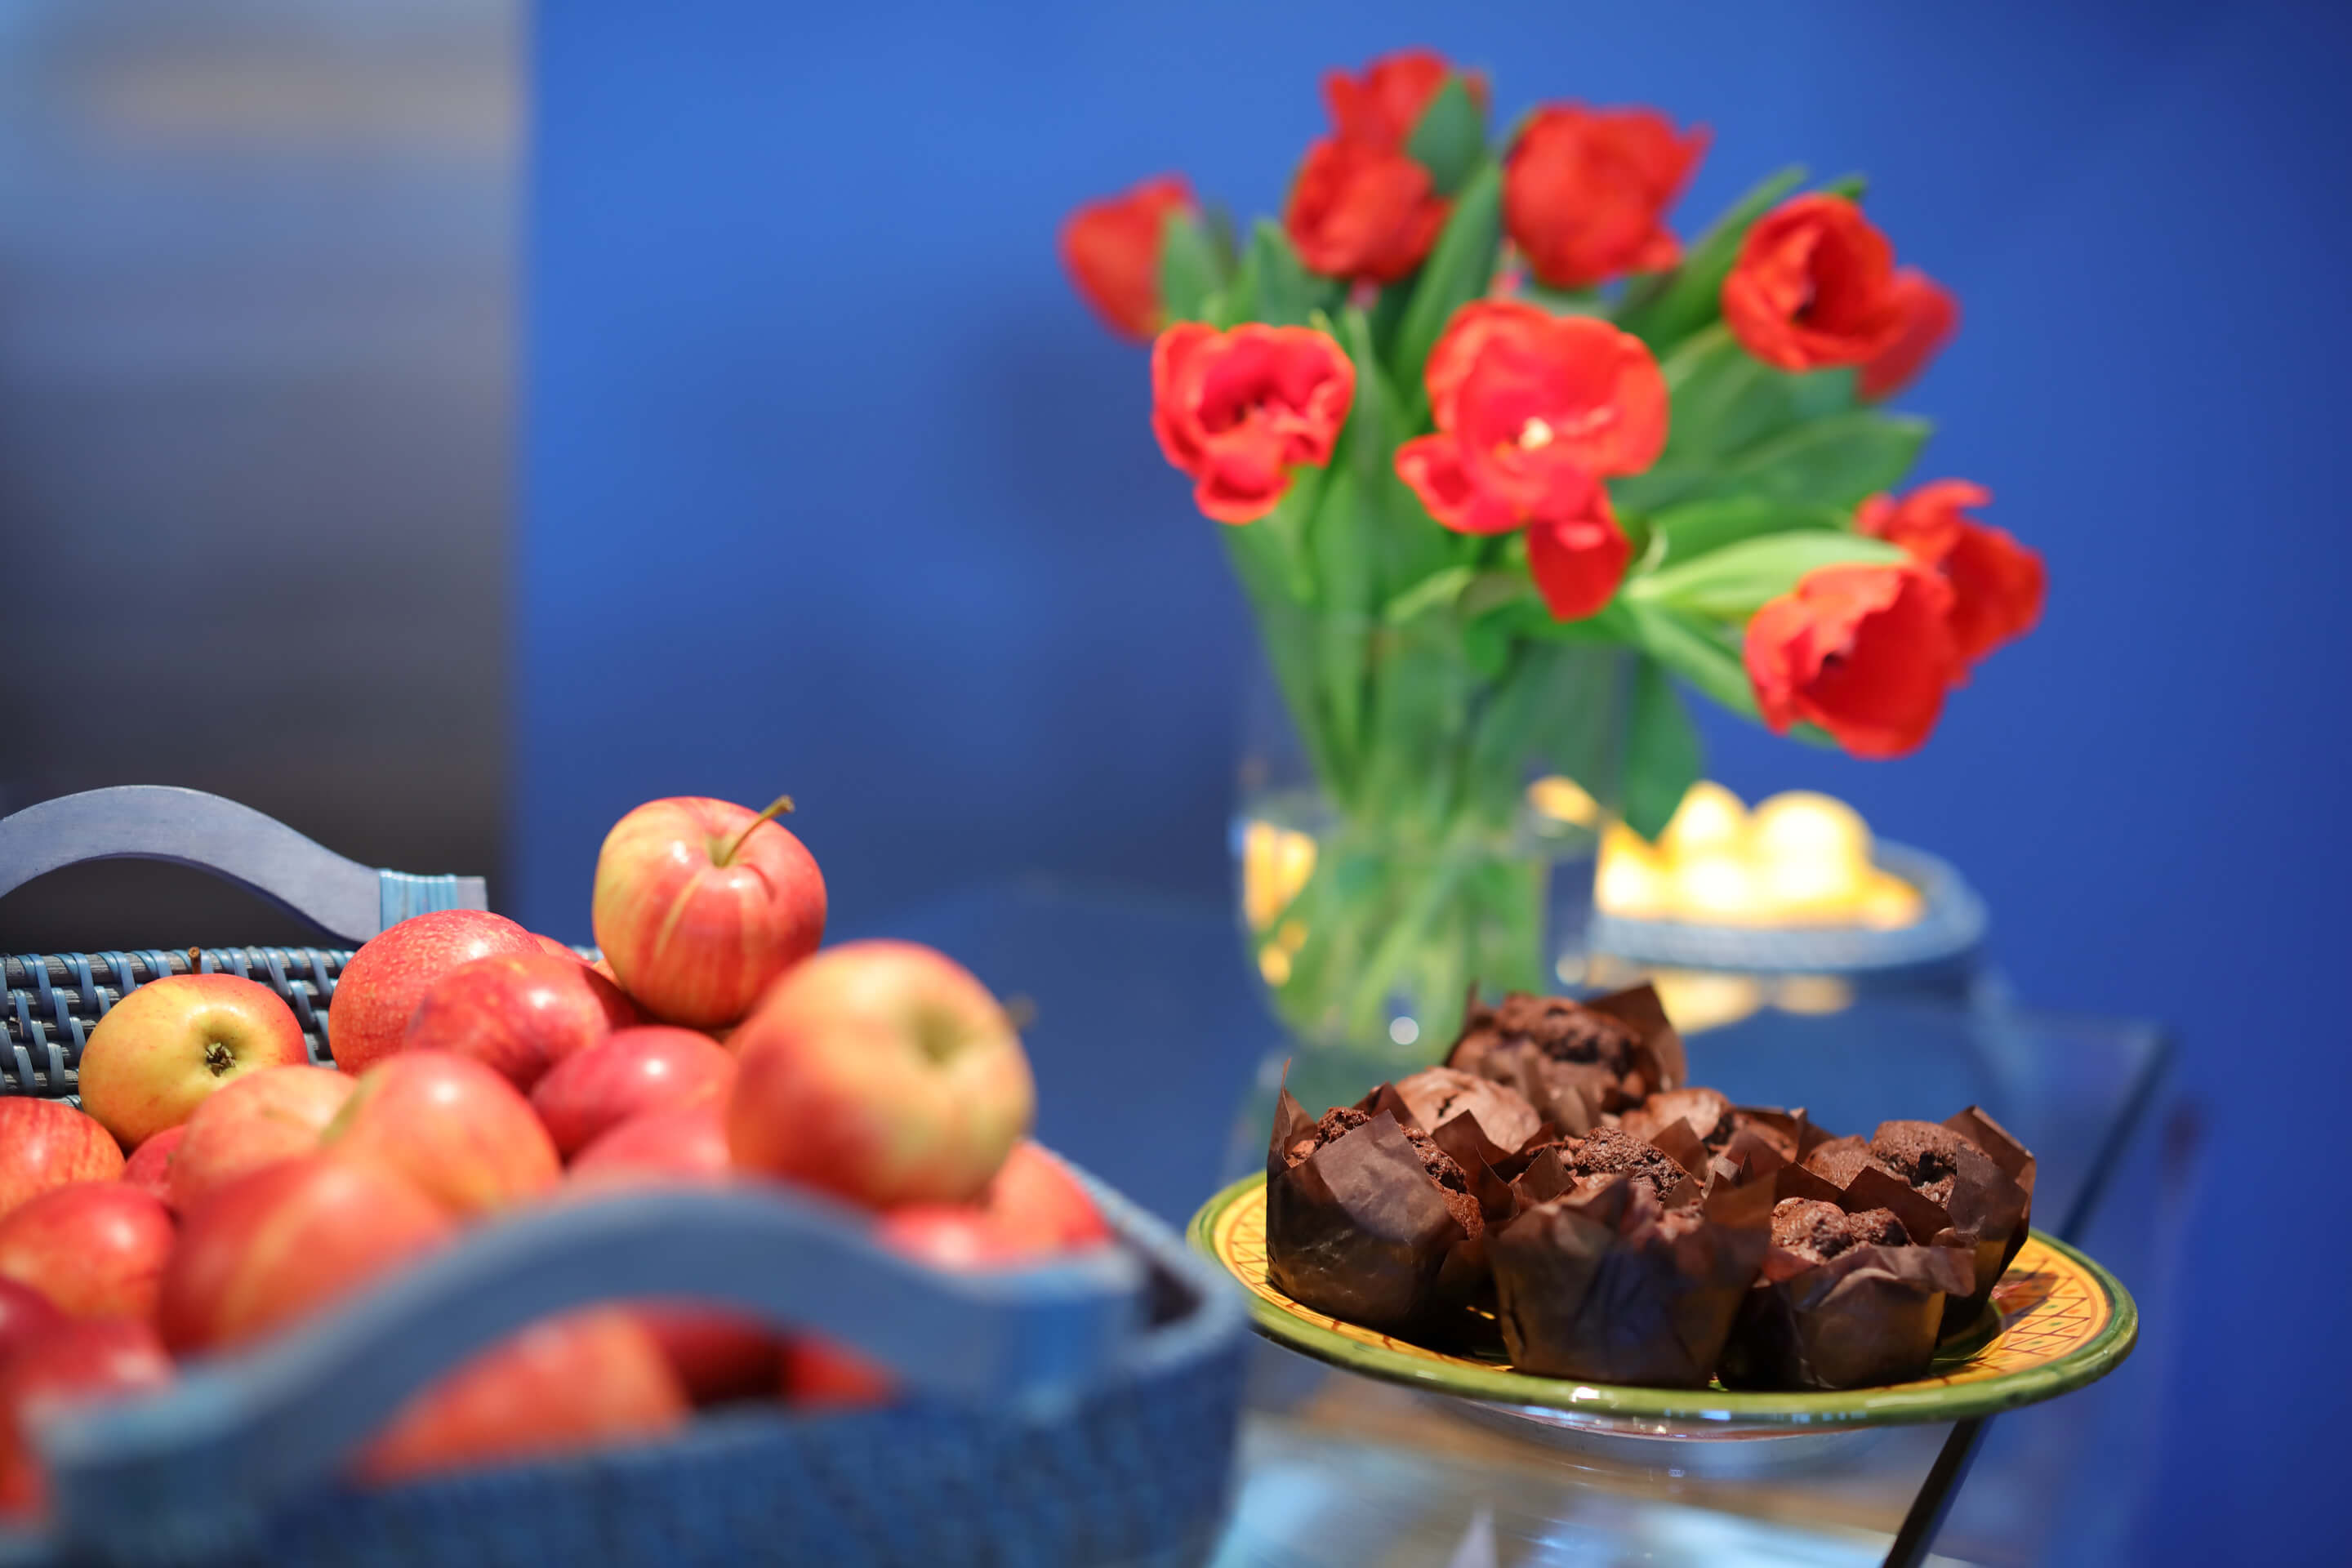 Foto: Foyer K Catering, Schoko Muffins und Äpfel